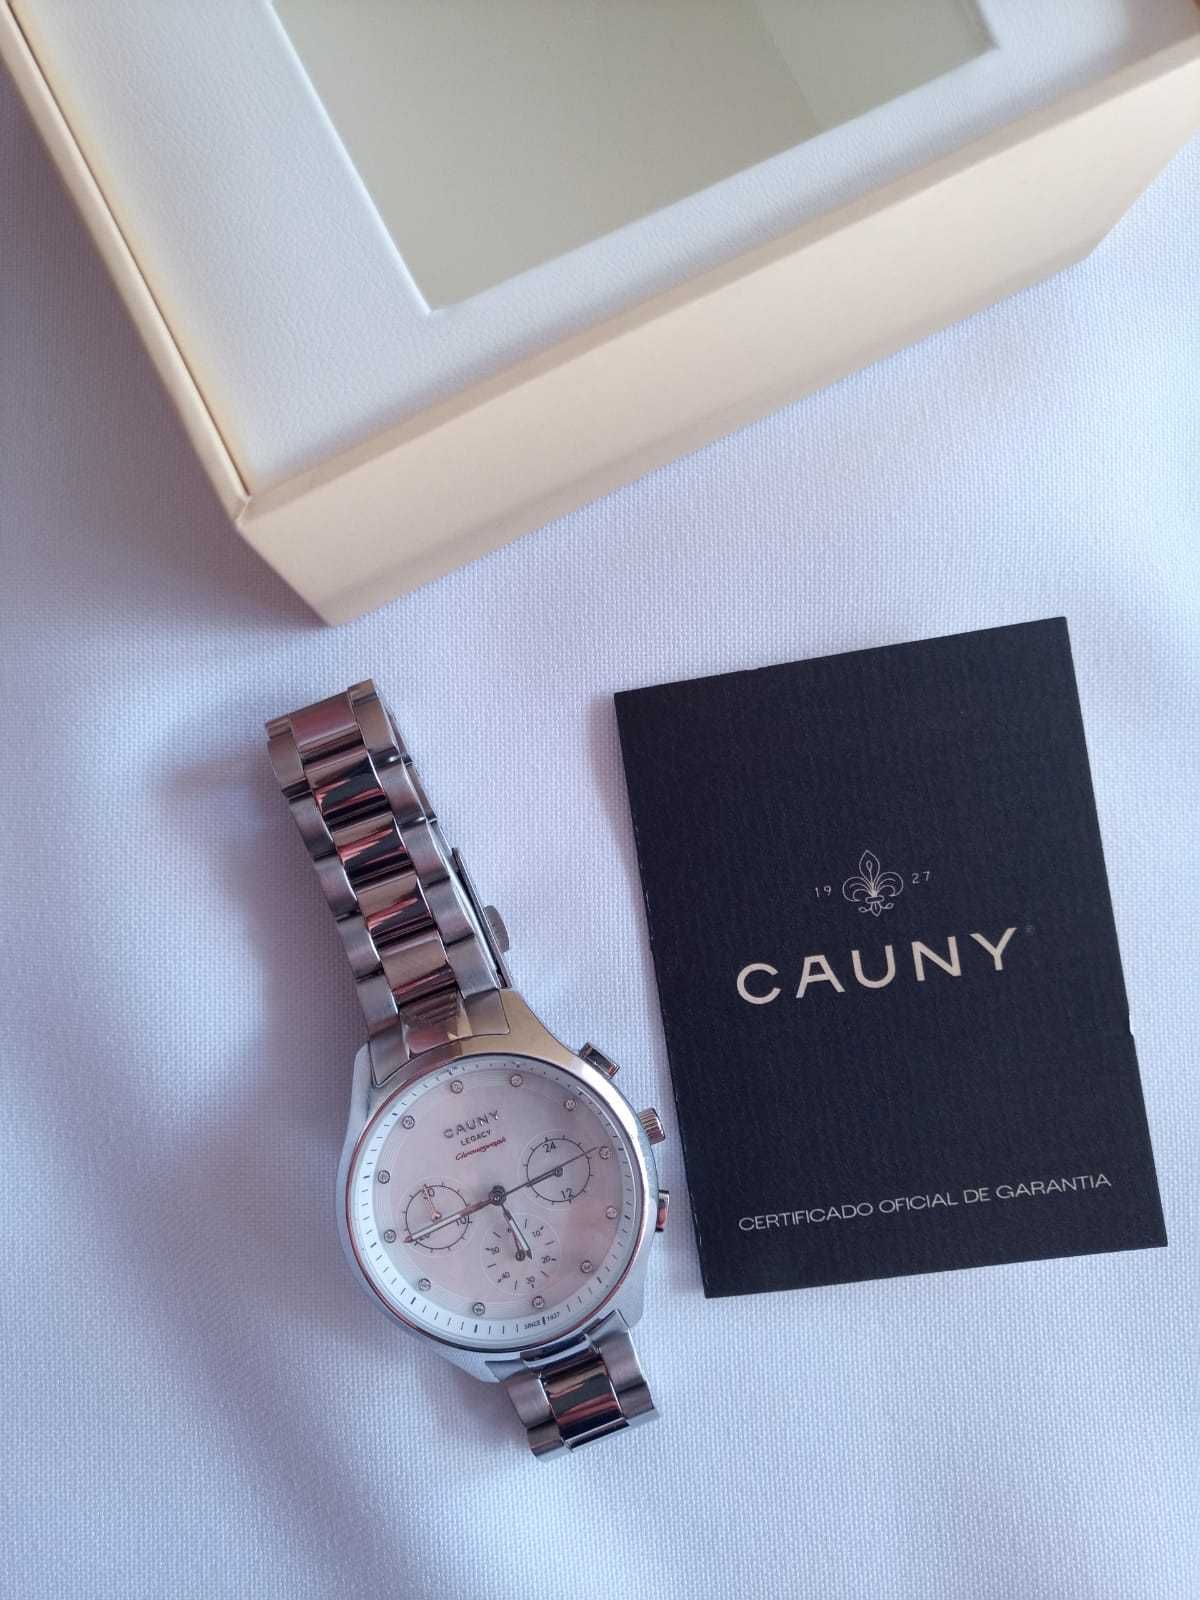 Relógio senhora Cauny Legacy Chronograph NOVO